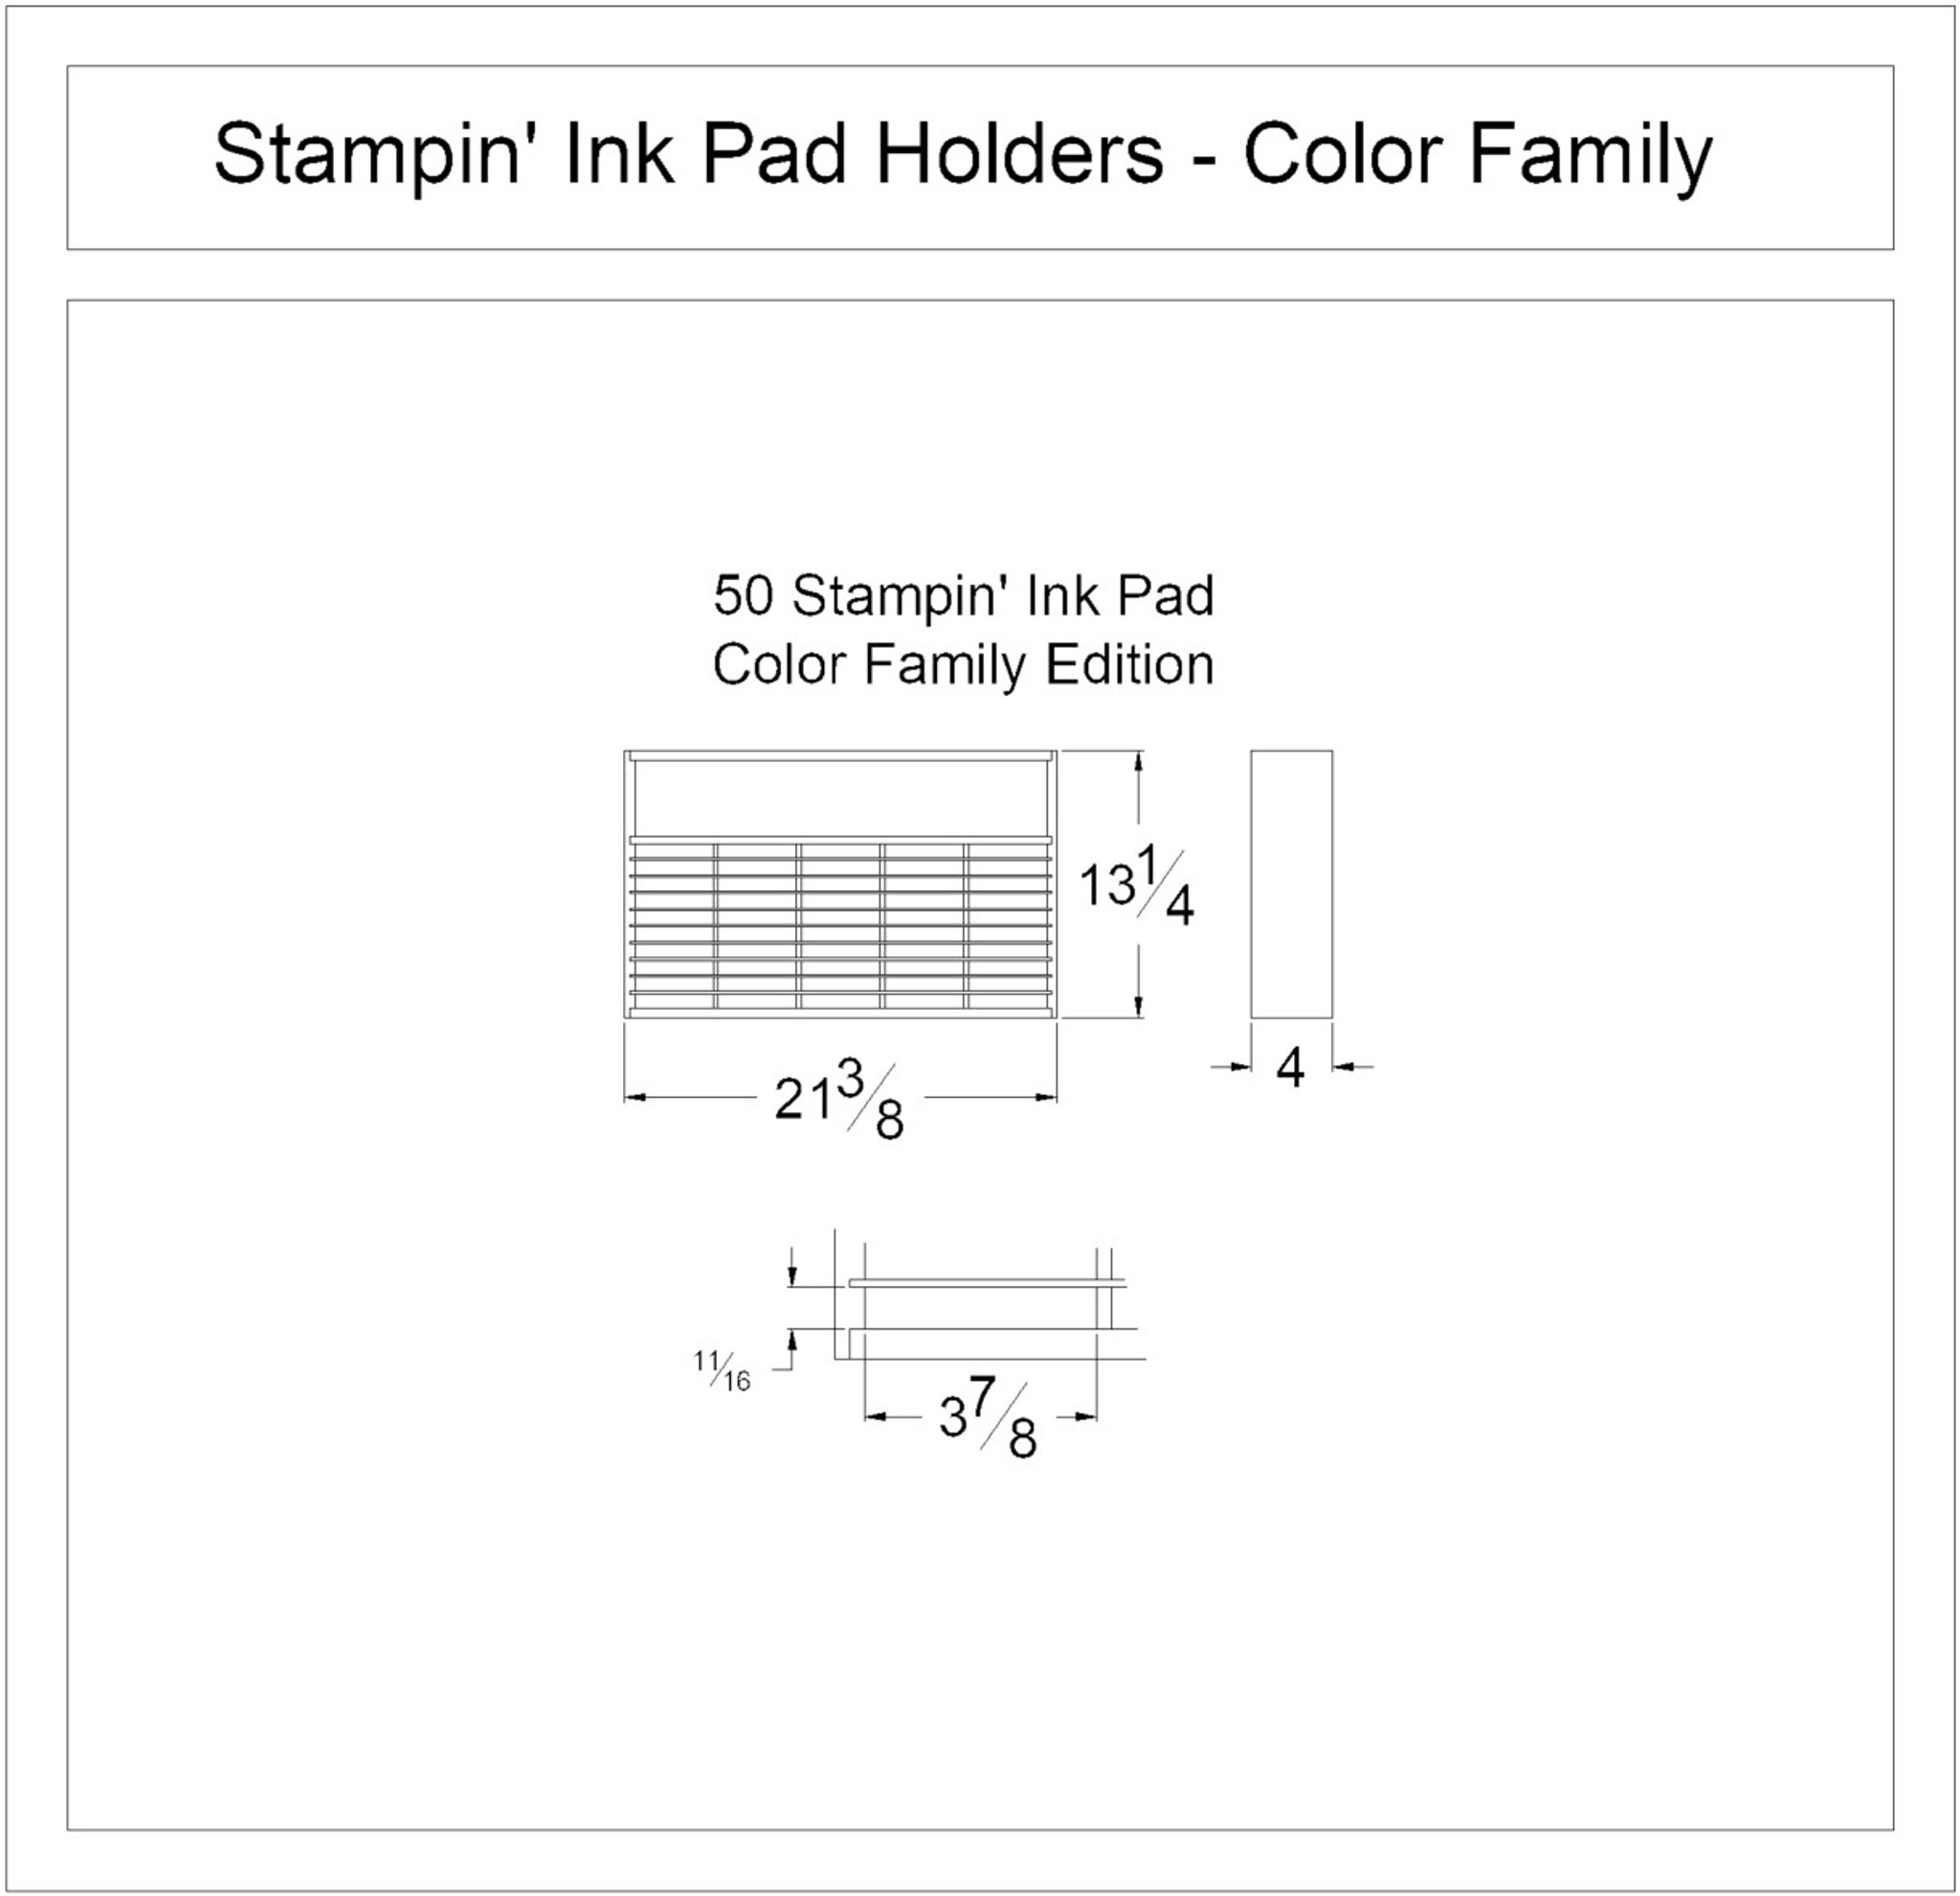 Standard Ink Pad Holder